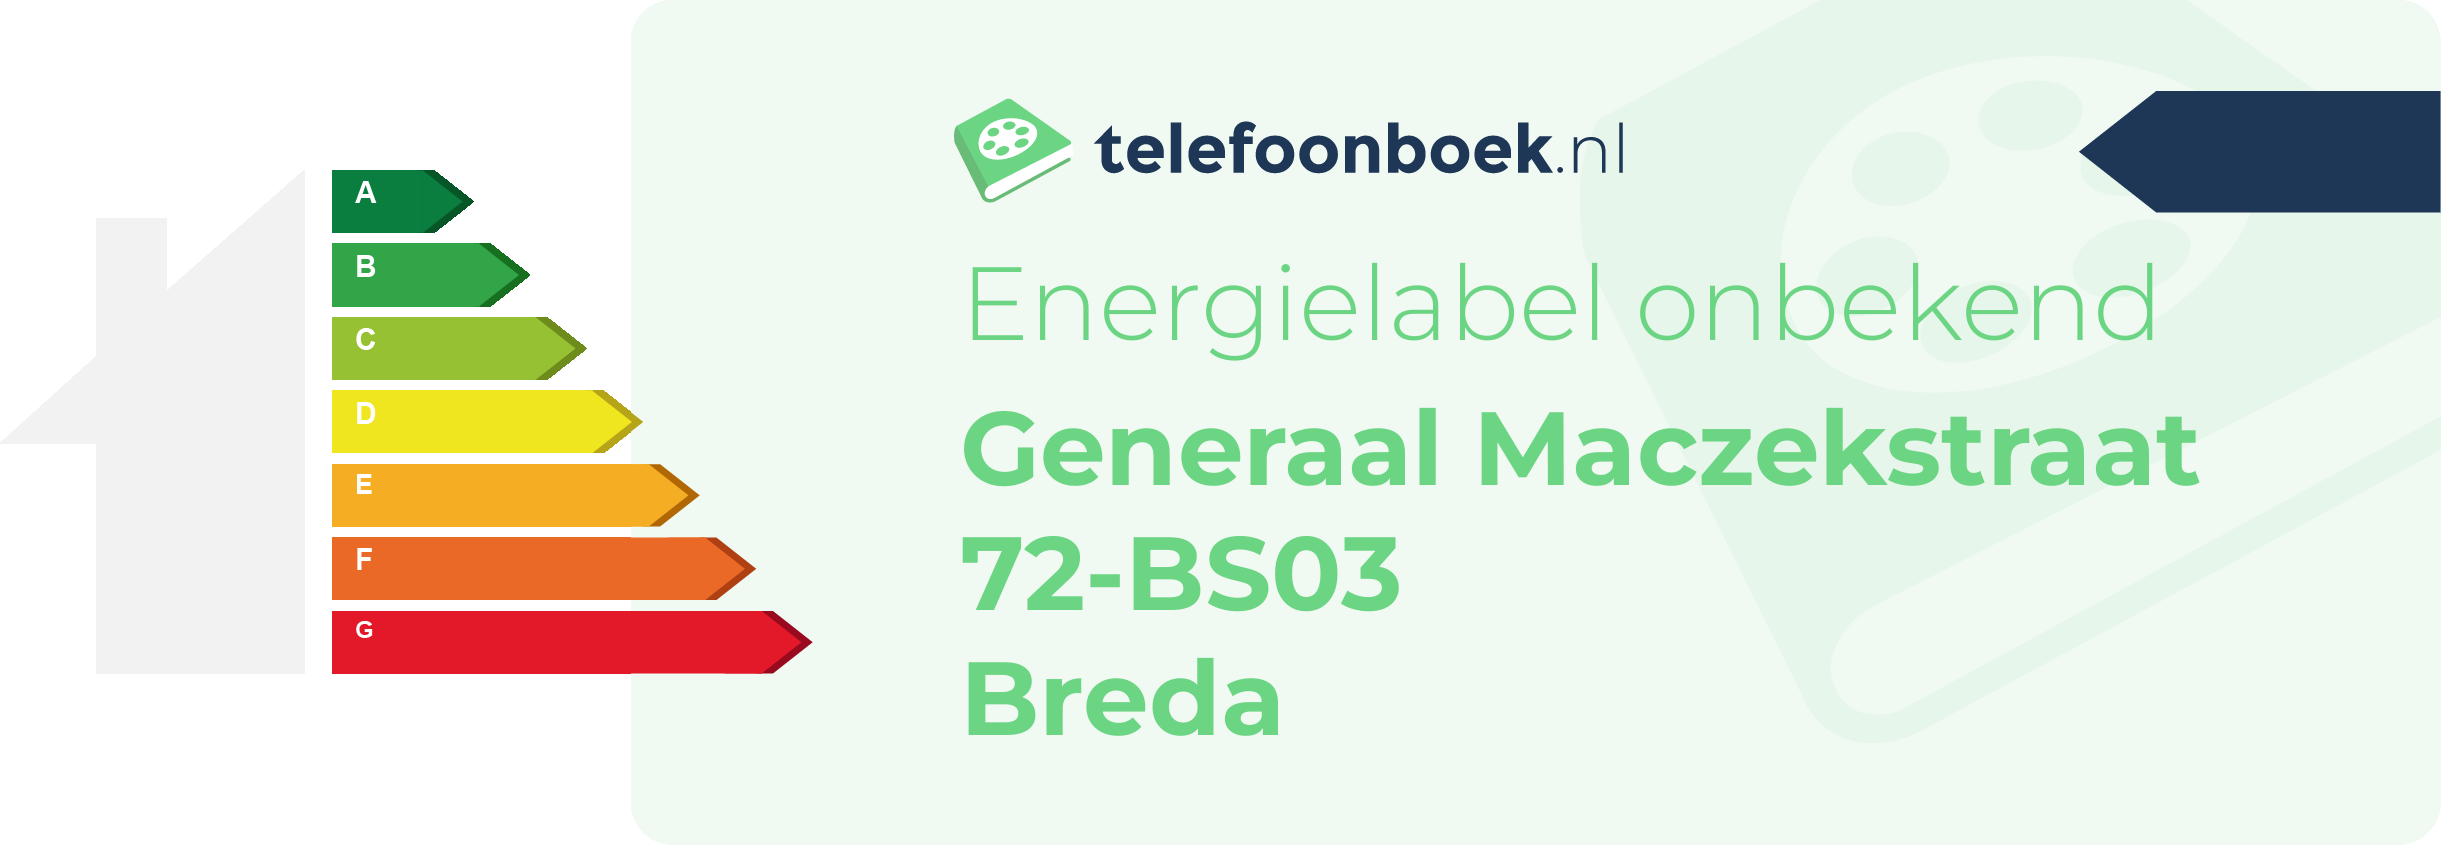 Energielabel Generaal Maczekstraat 72-BS03 Breda